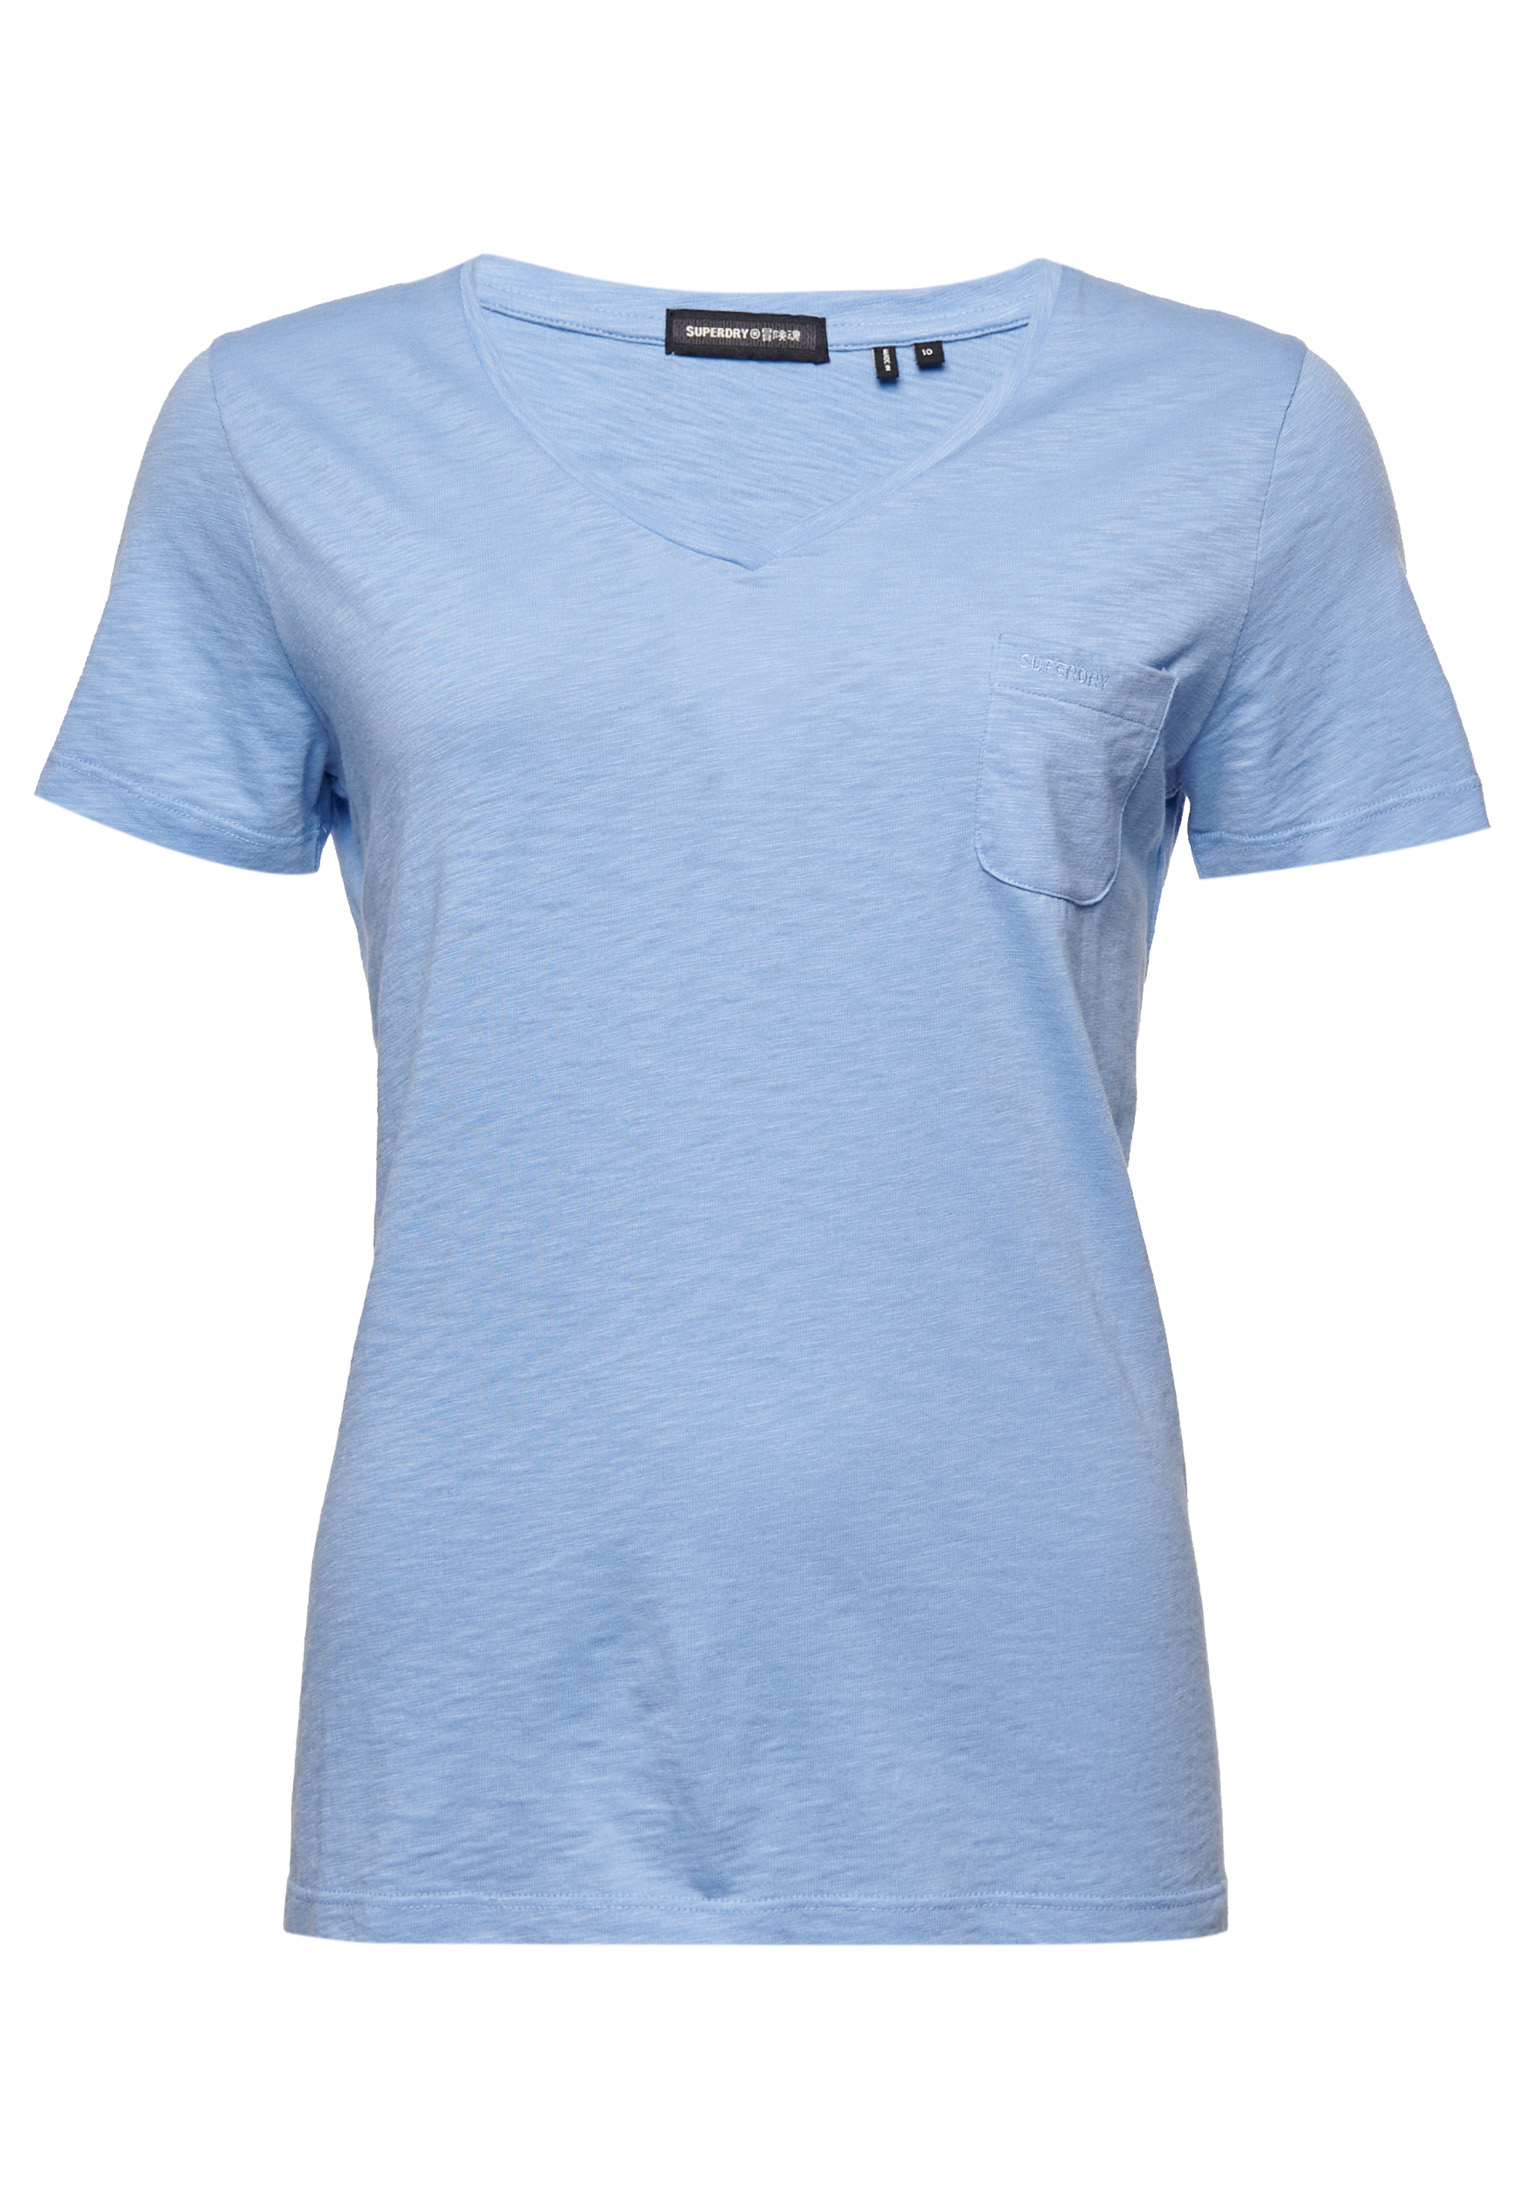 Superdry Womens Organic Cotton Pocket V-Neck T-Shirt | eBay